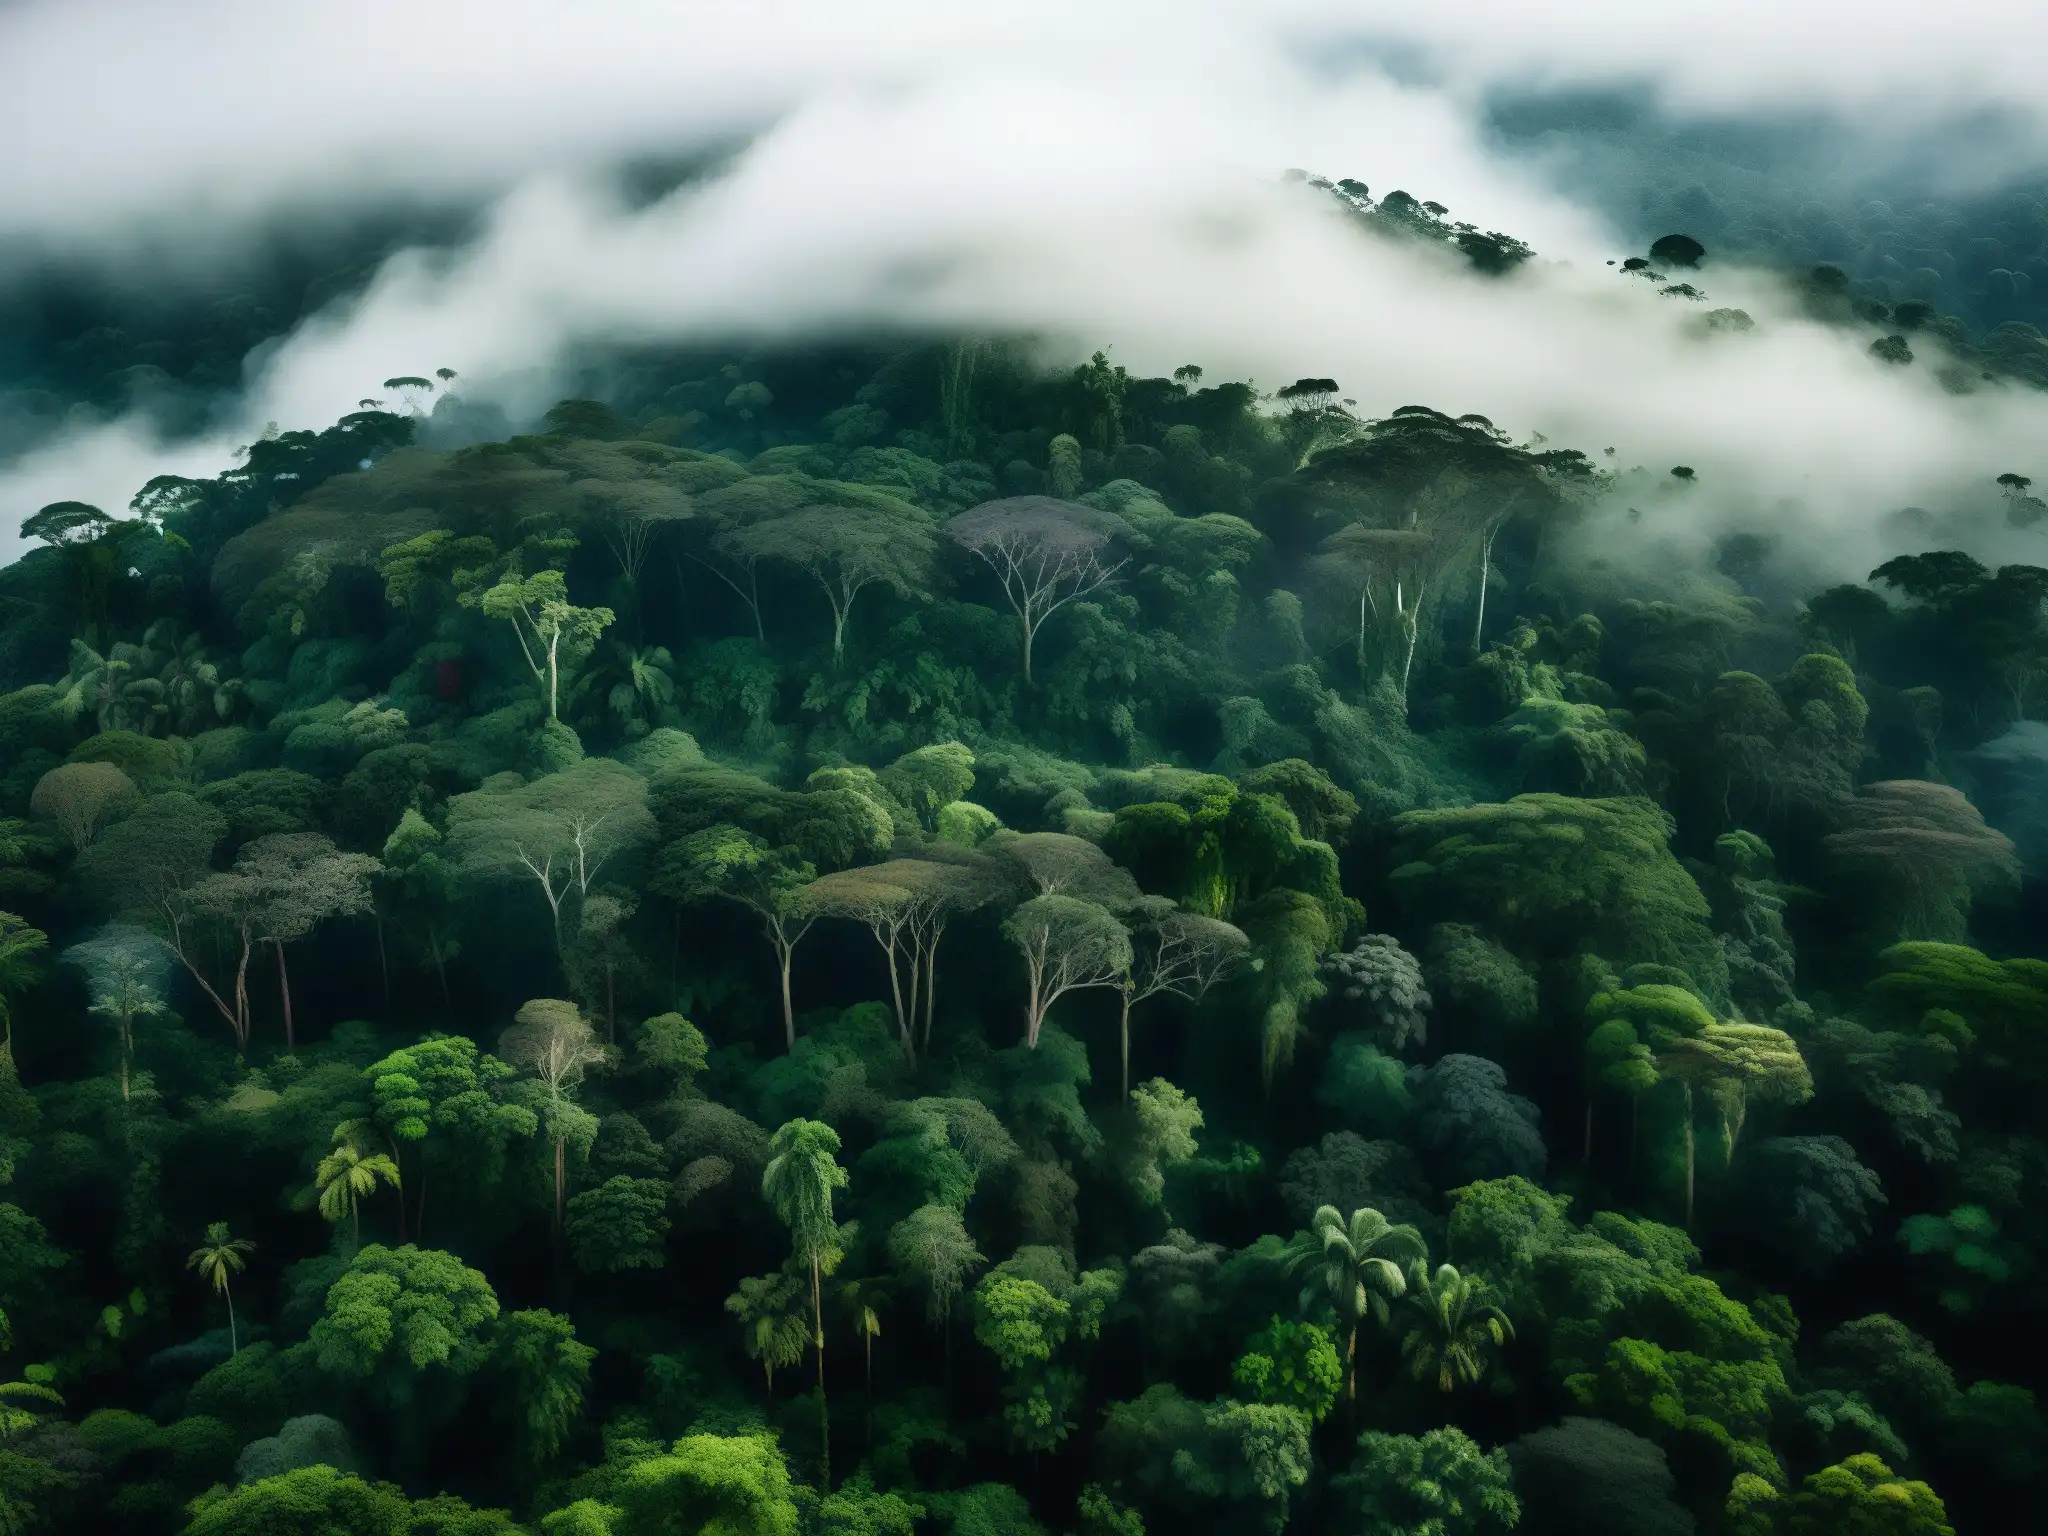 Imagen de la selva amazónica con aura misteriosa y mística, evocando el origen legendario del Mapinguari